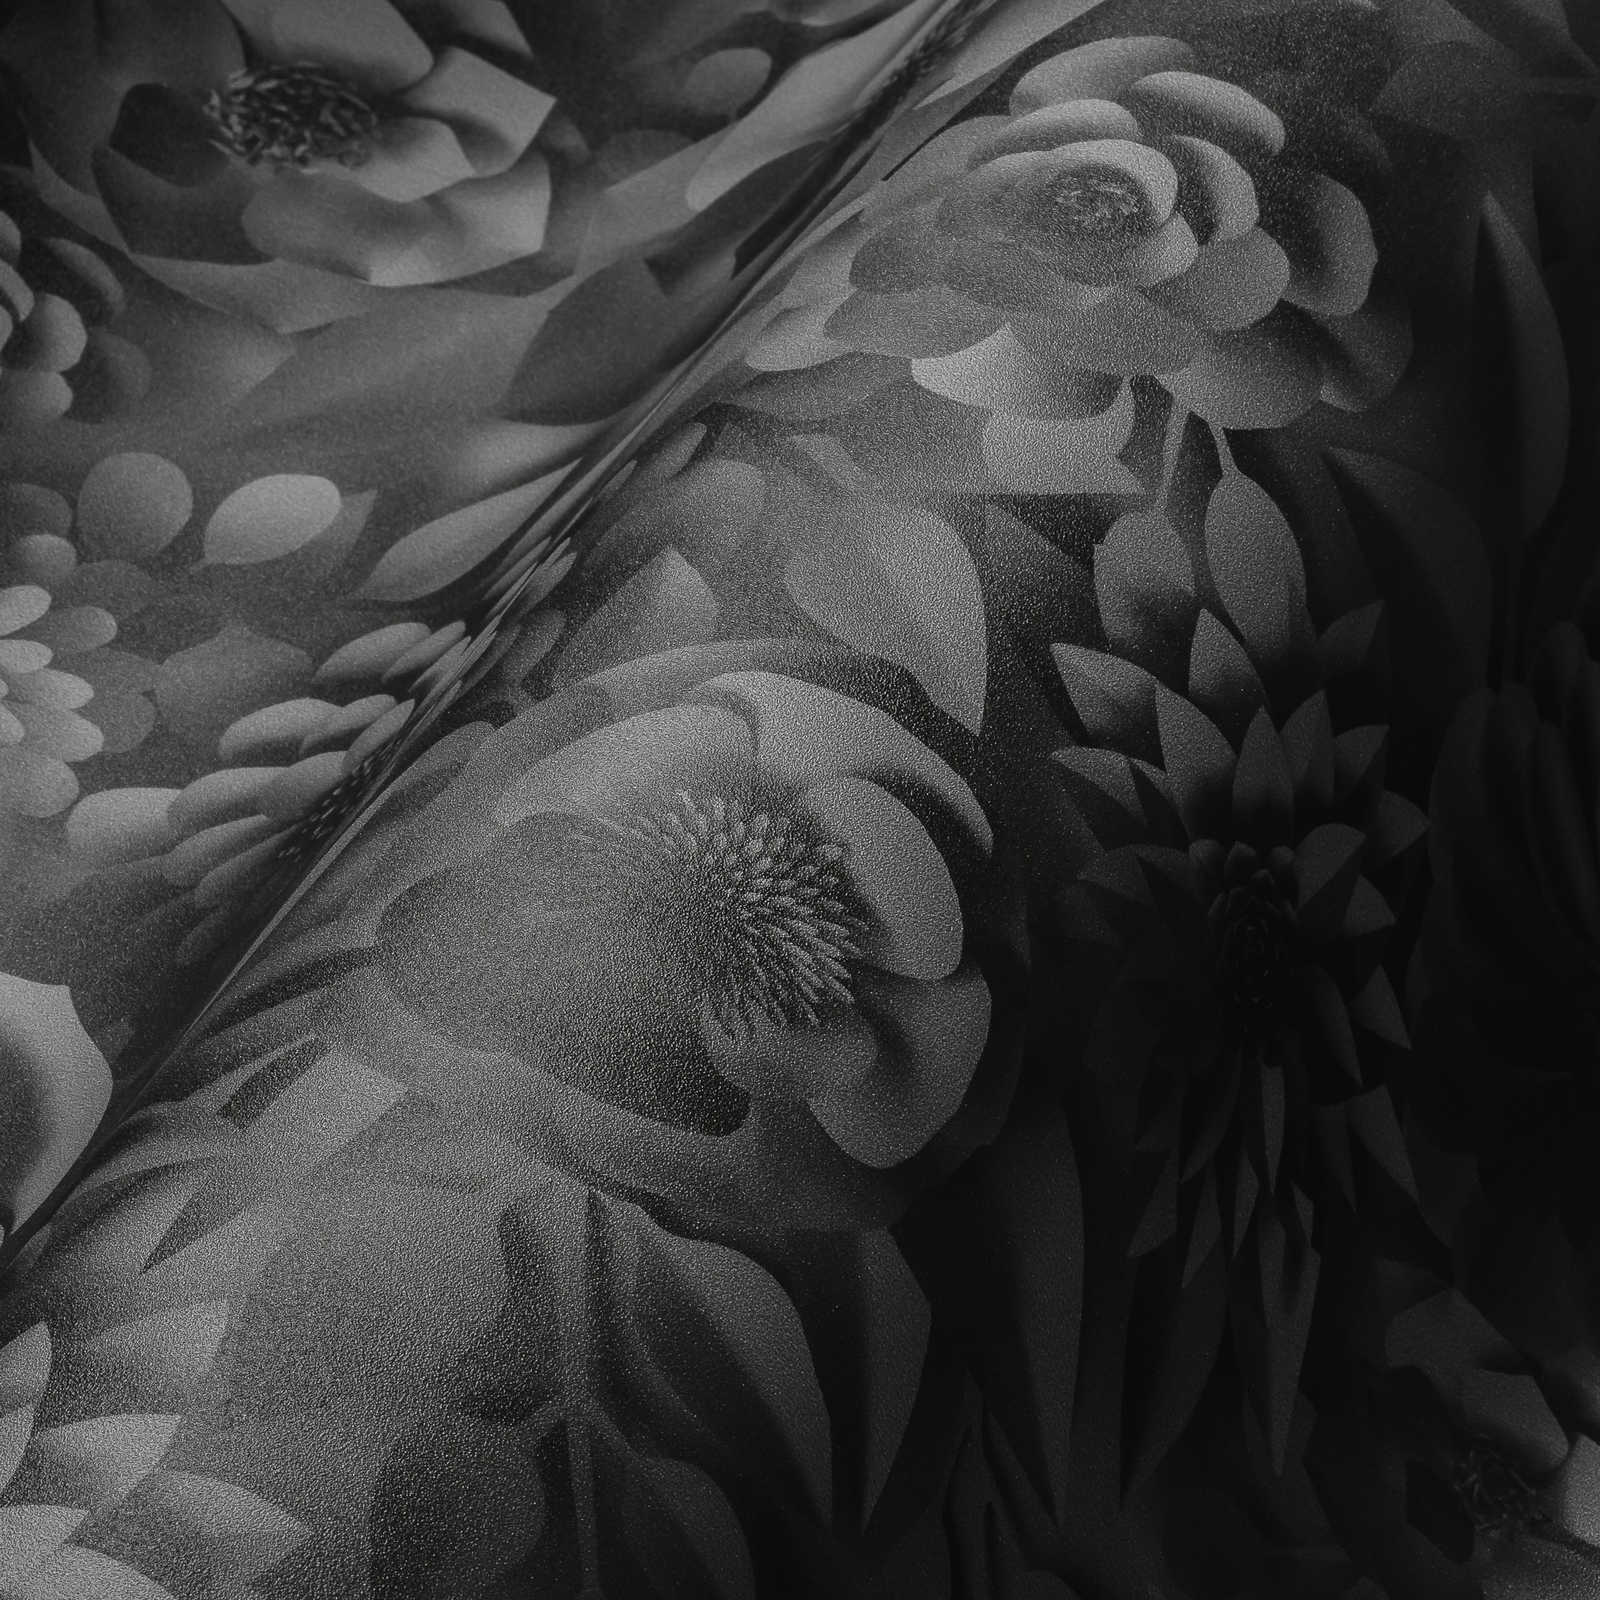             Papier peint 3D fleurs en papier - gris, noir
        